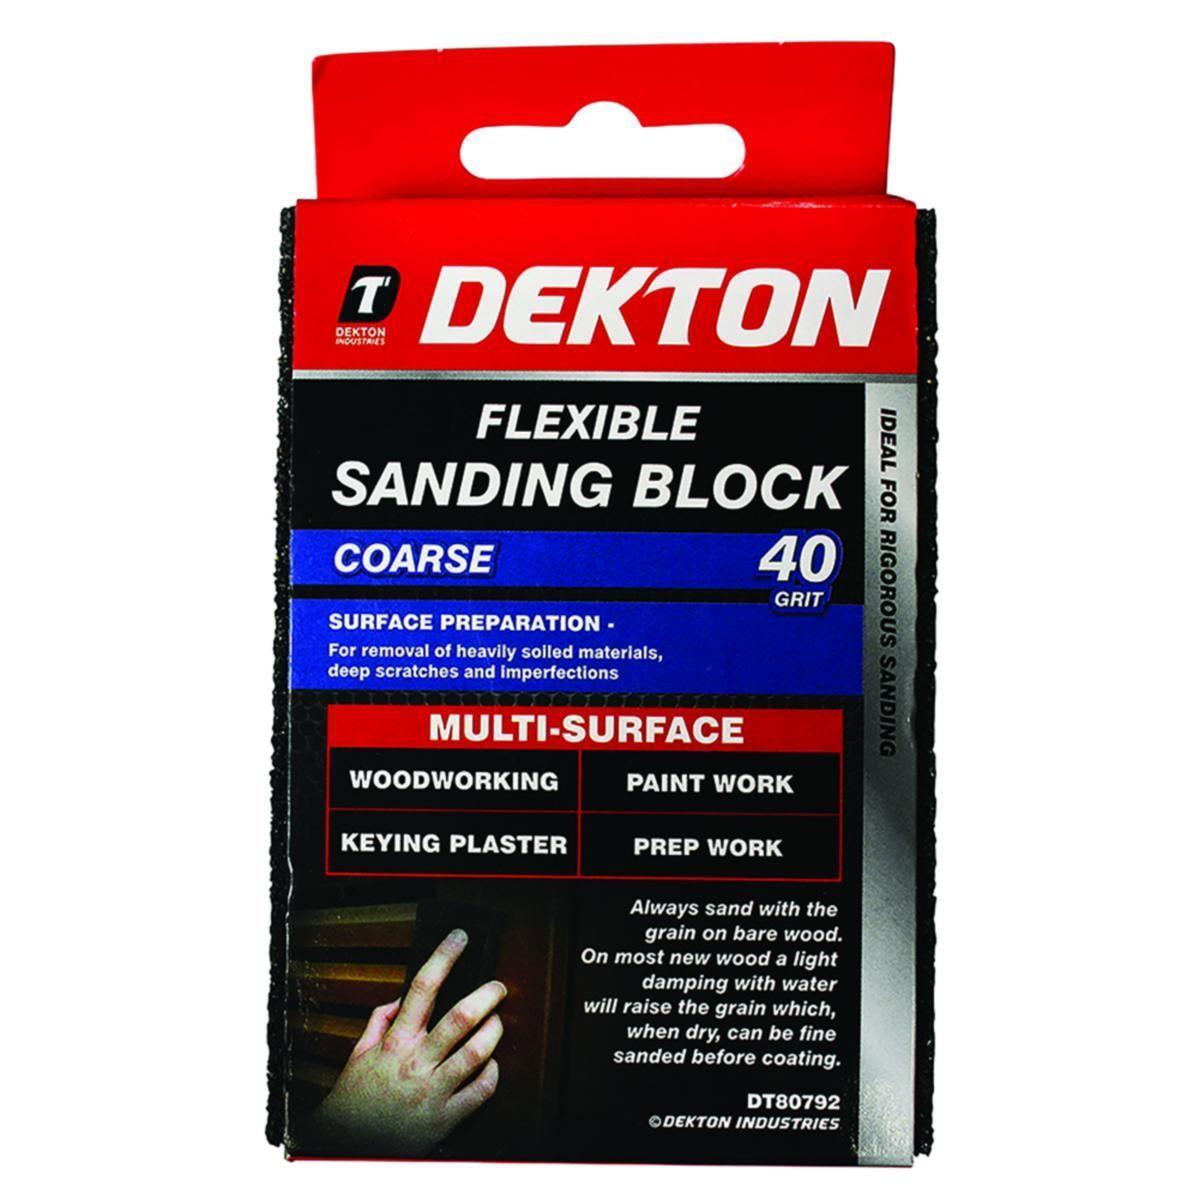 Dekton | Flexible Sanding Block Course 40 Grit DT80792 - Choice Stores